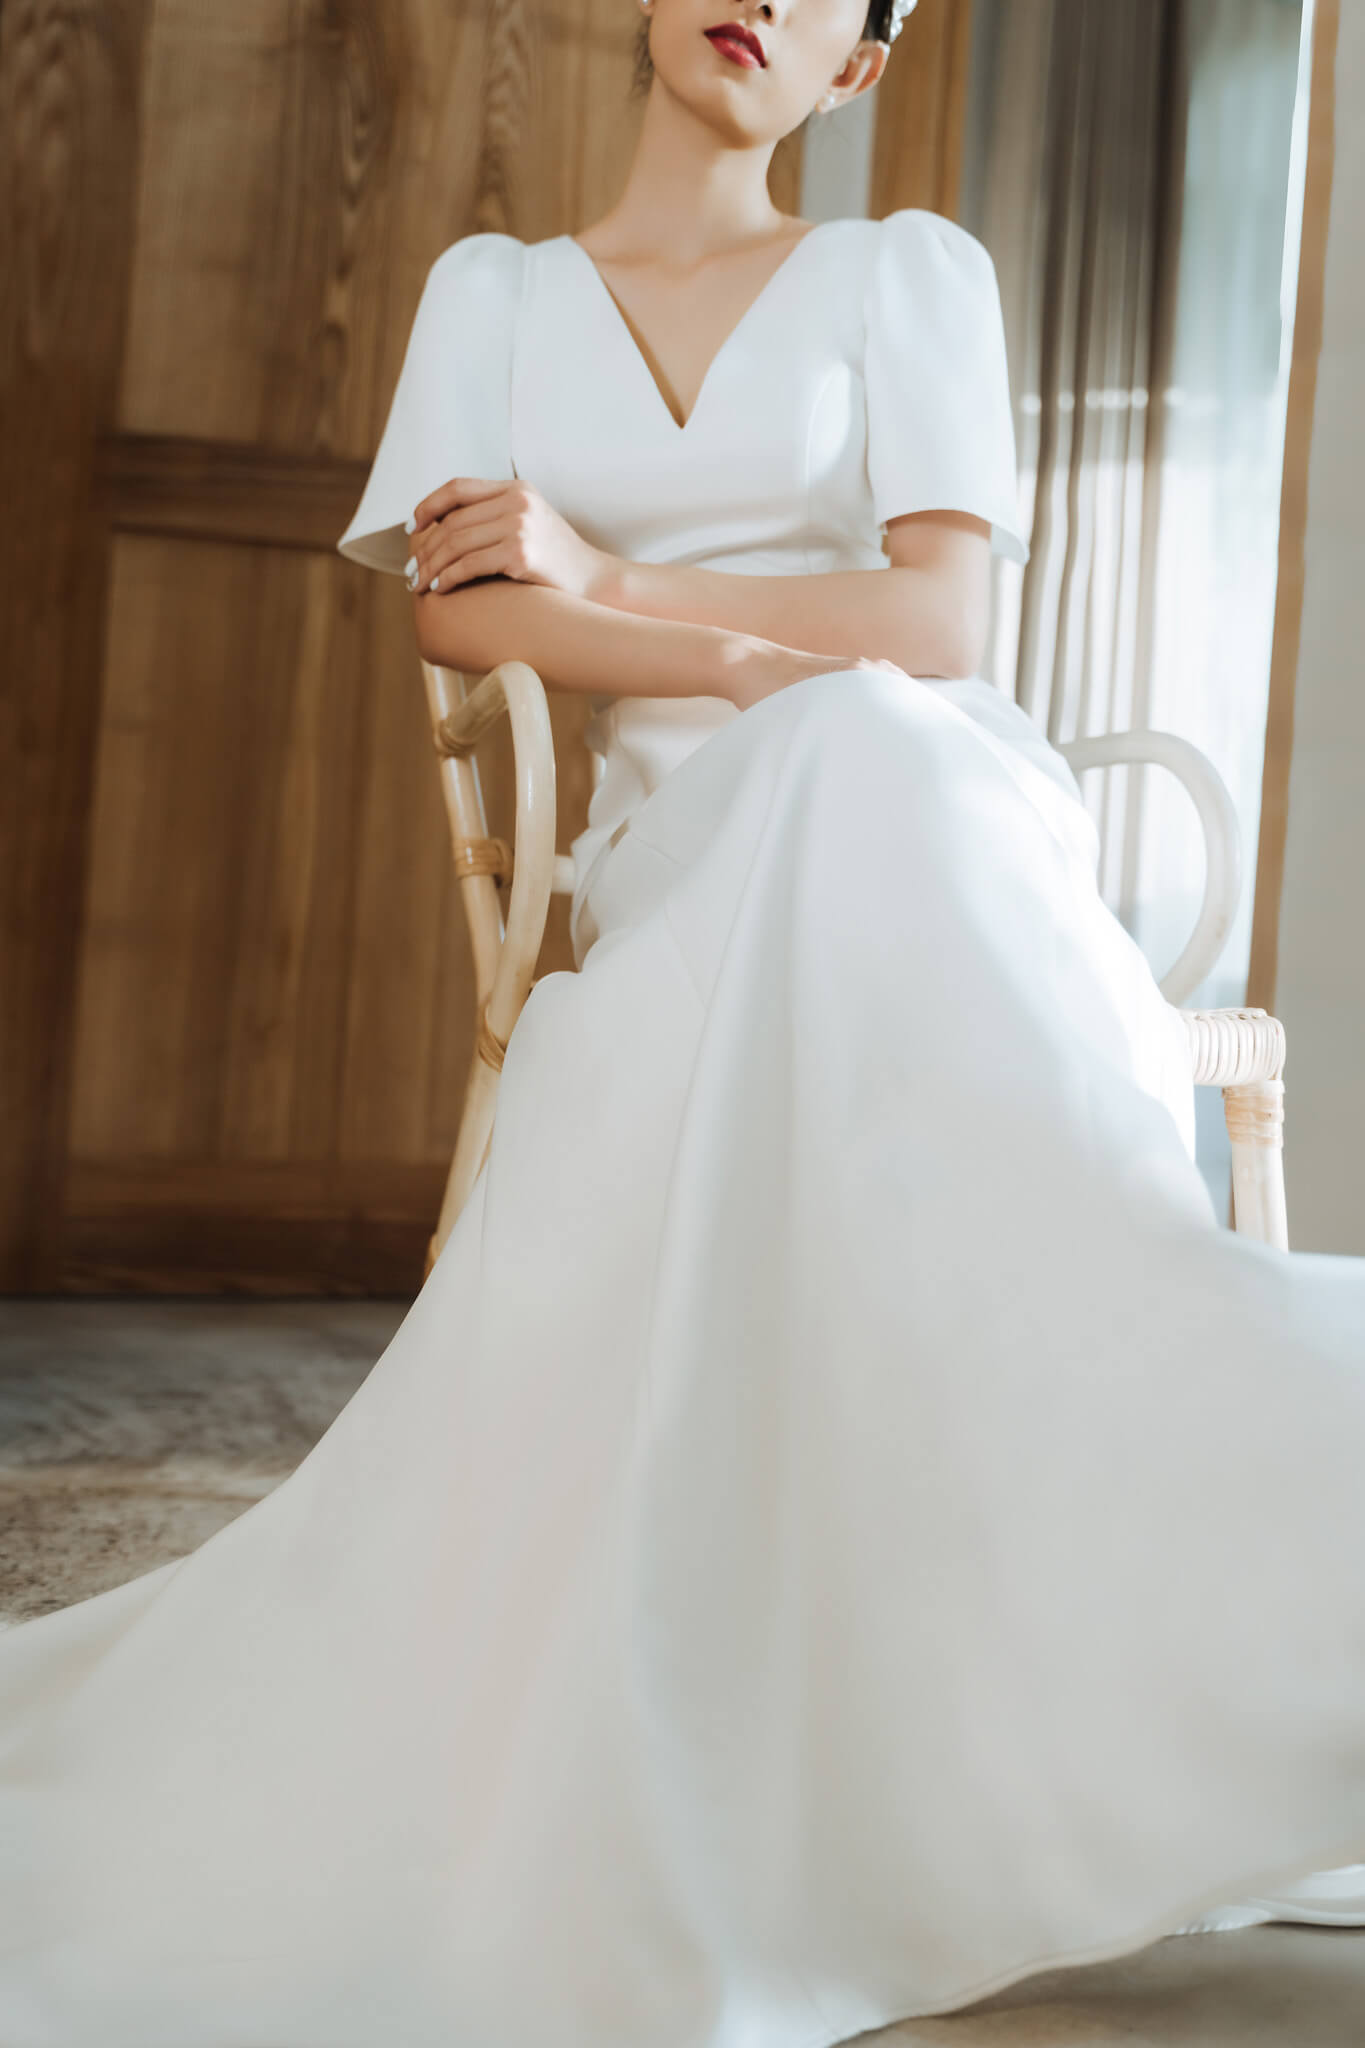 Hoa hậu Đỗ Mỹ Linh rạng ngời trong ngày trọng đại cùng 5 bộ váy cưới đẹp  tinh tế